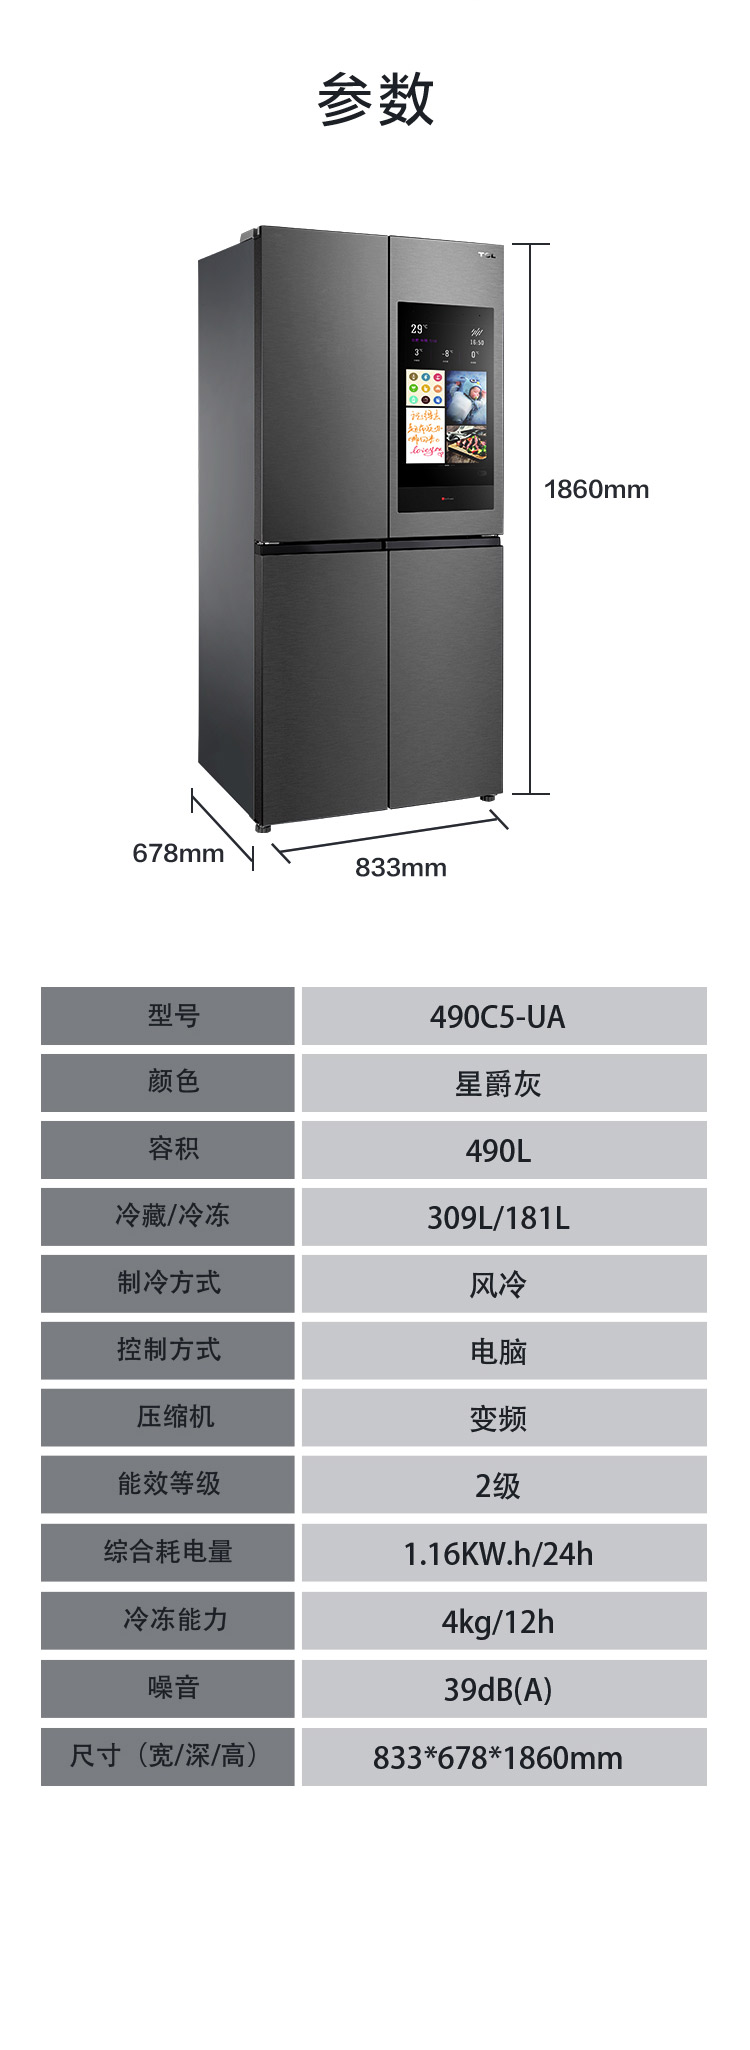 TCL 490C5-U C5大屏急冷式冰箱